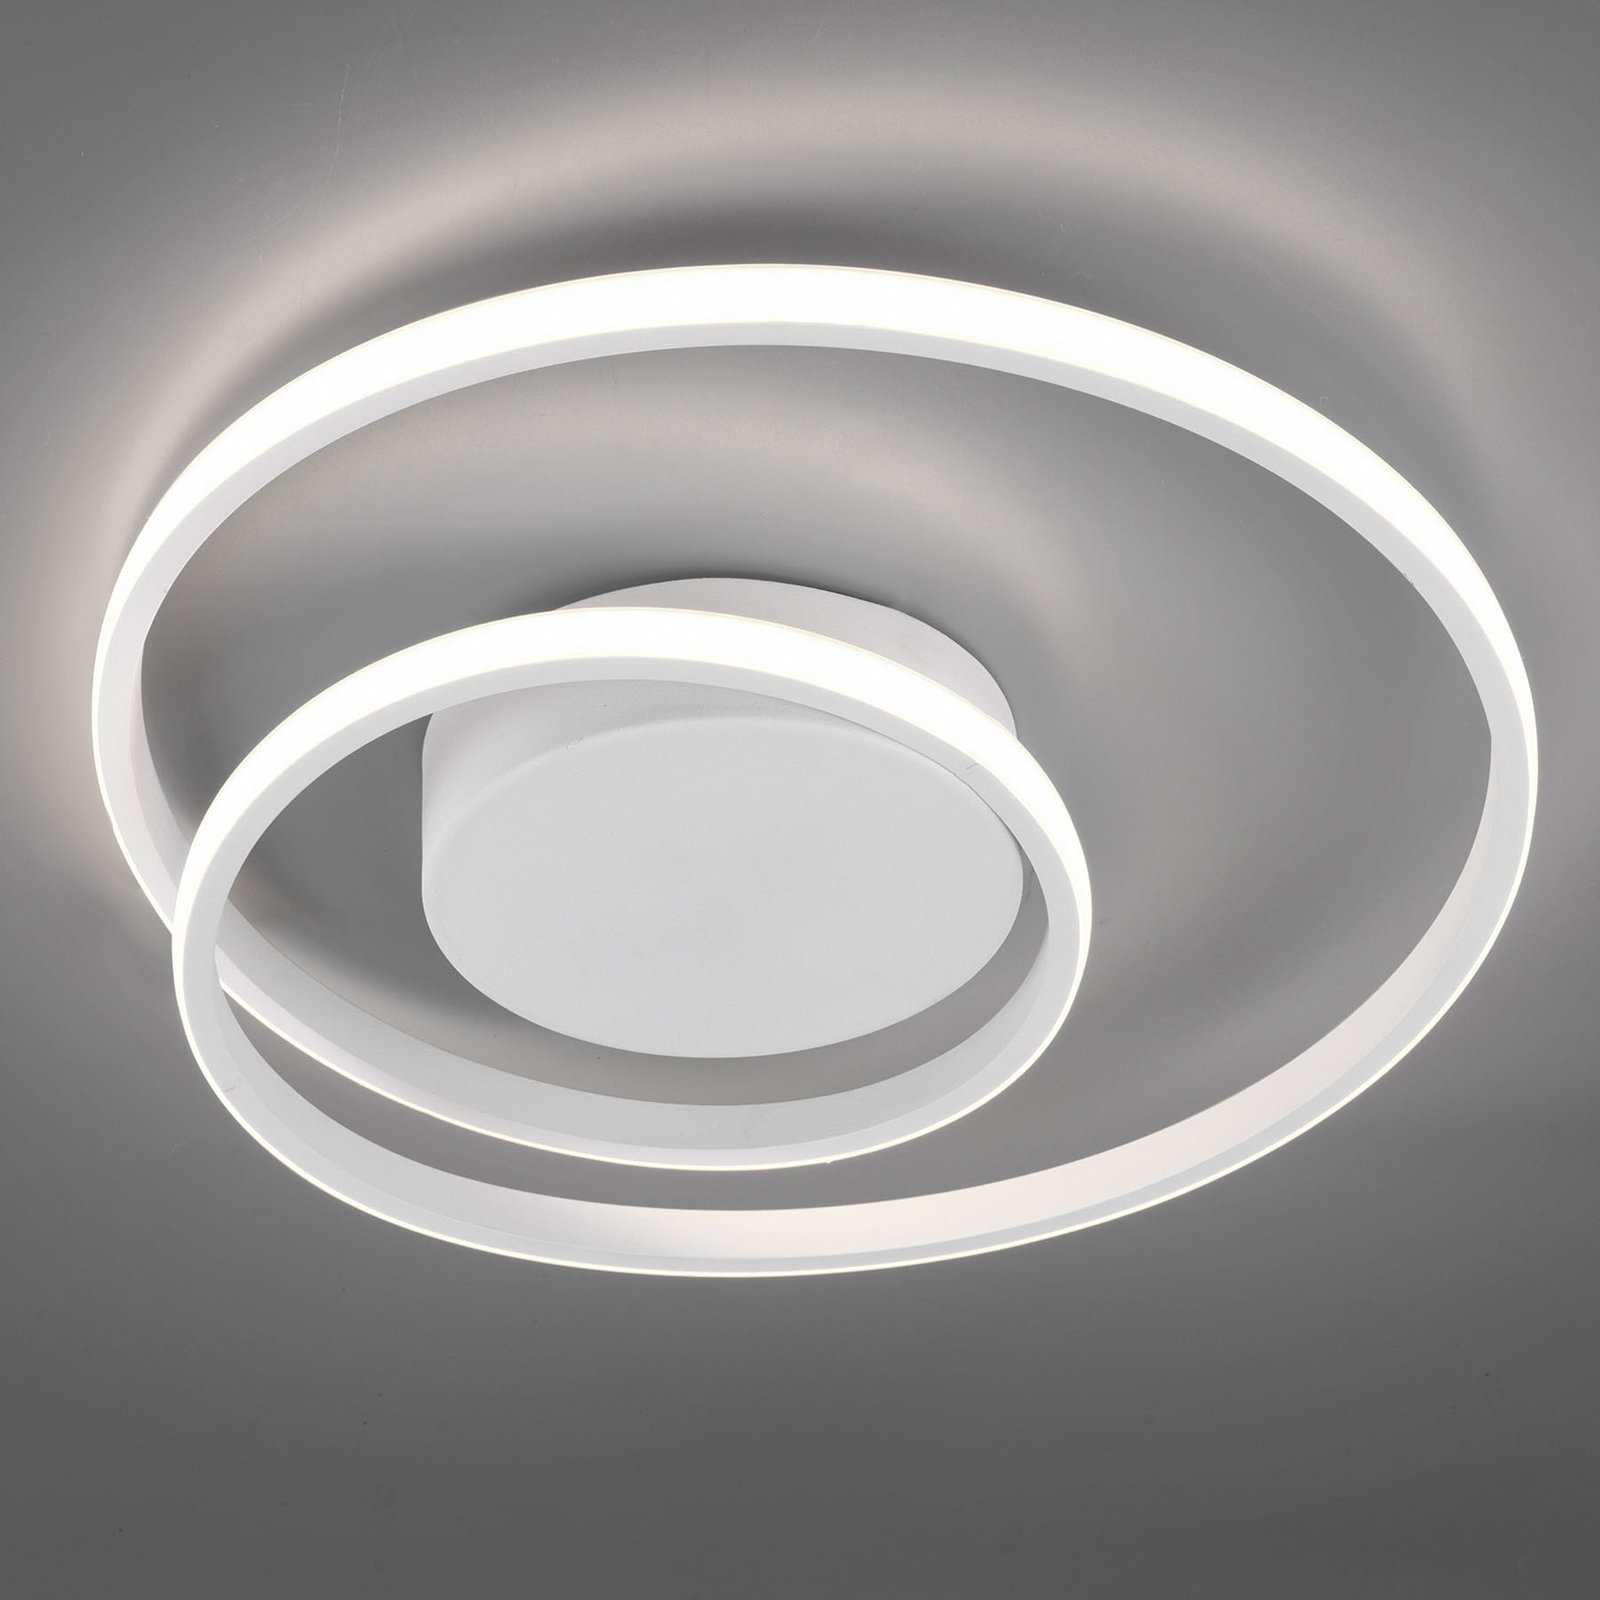 LED ceiling light Zibal, dimmable, white